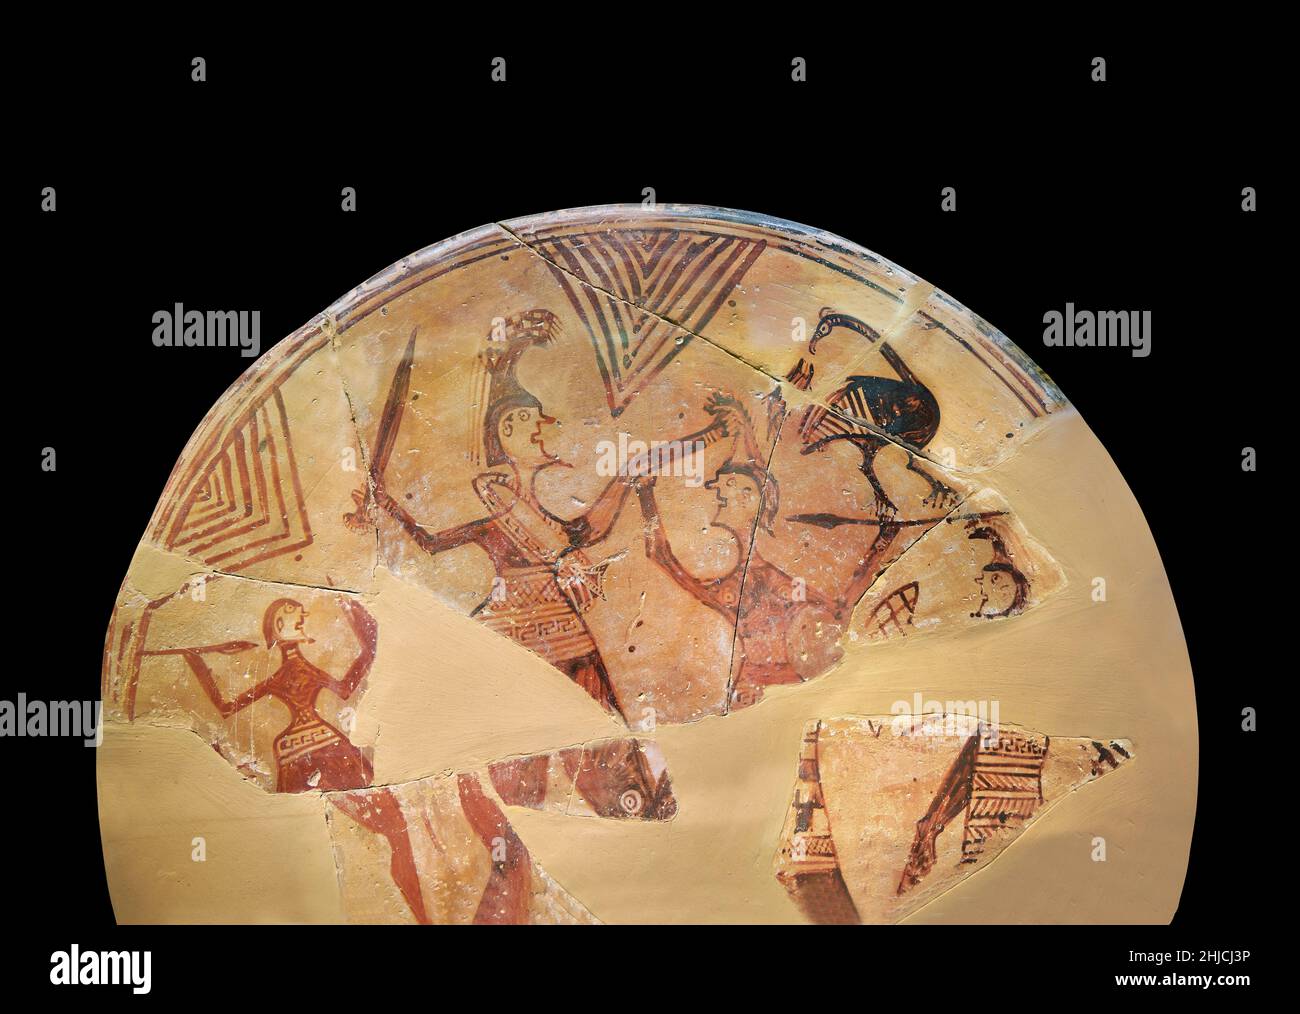 Ancien bouclier votif grec en terre cuite peint avec des guerriers combattant avec des épées, Tiryns Upper Citadel 'Bothross', début 7th cent BC.Les arches de nafplion Banque D'Images